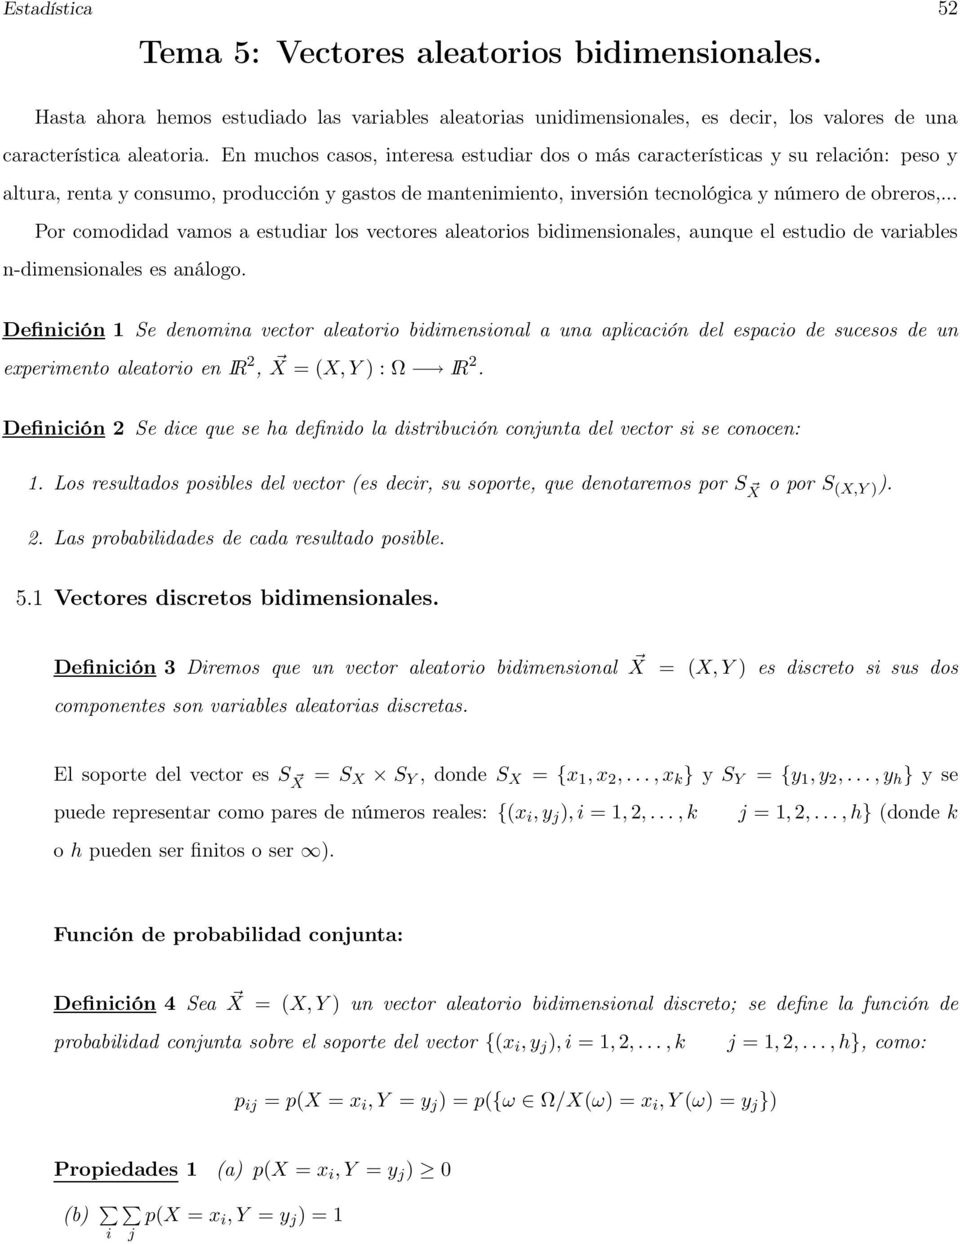 .. Por comodidad vamos a estudiar los vectores aleatorios bidimensionales, aunque el estudio de variables n-dimensionales es análogo.